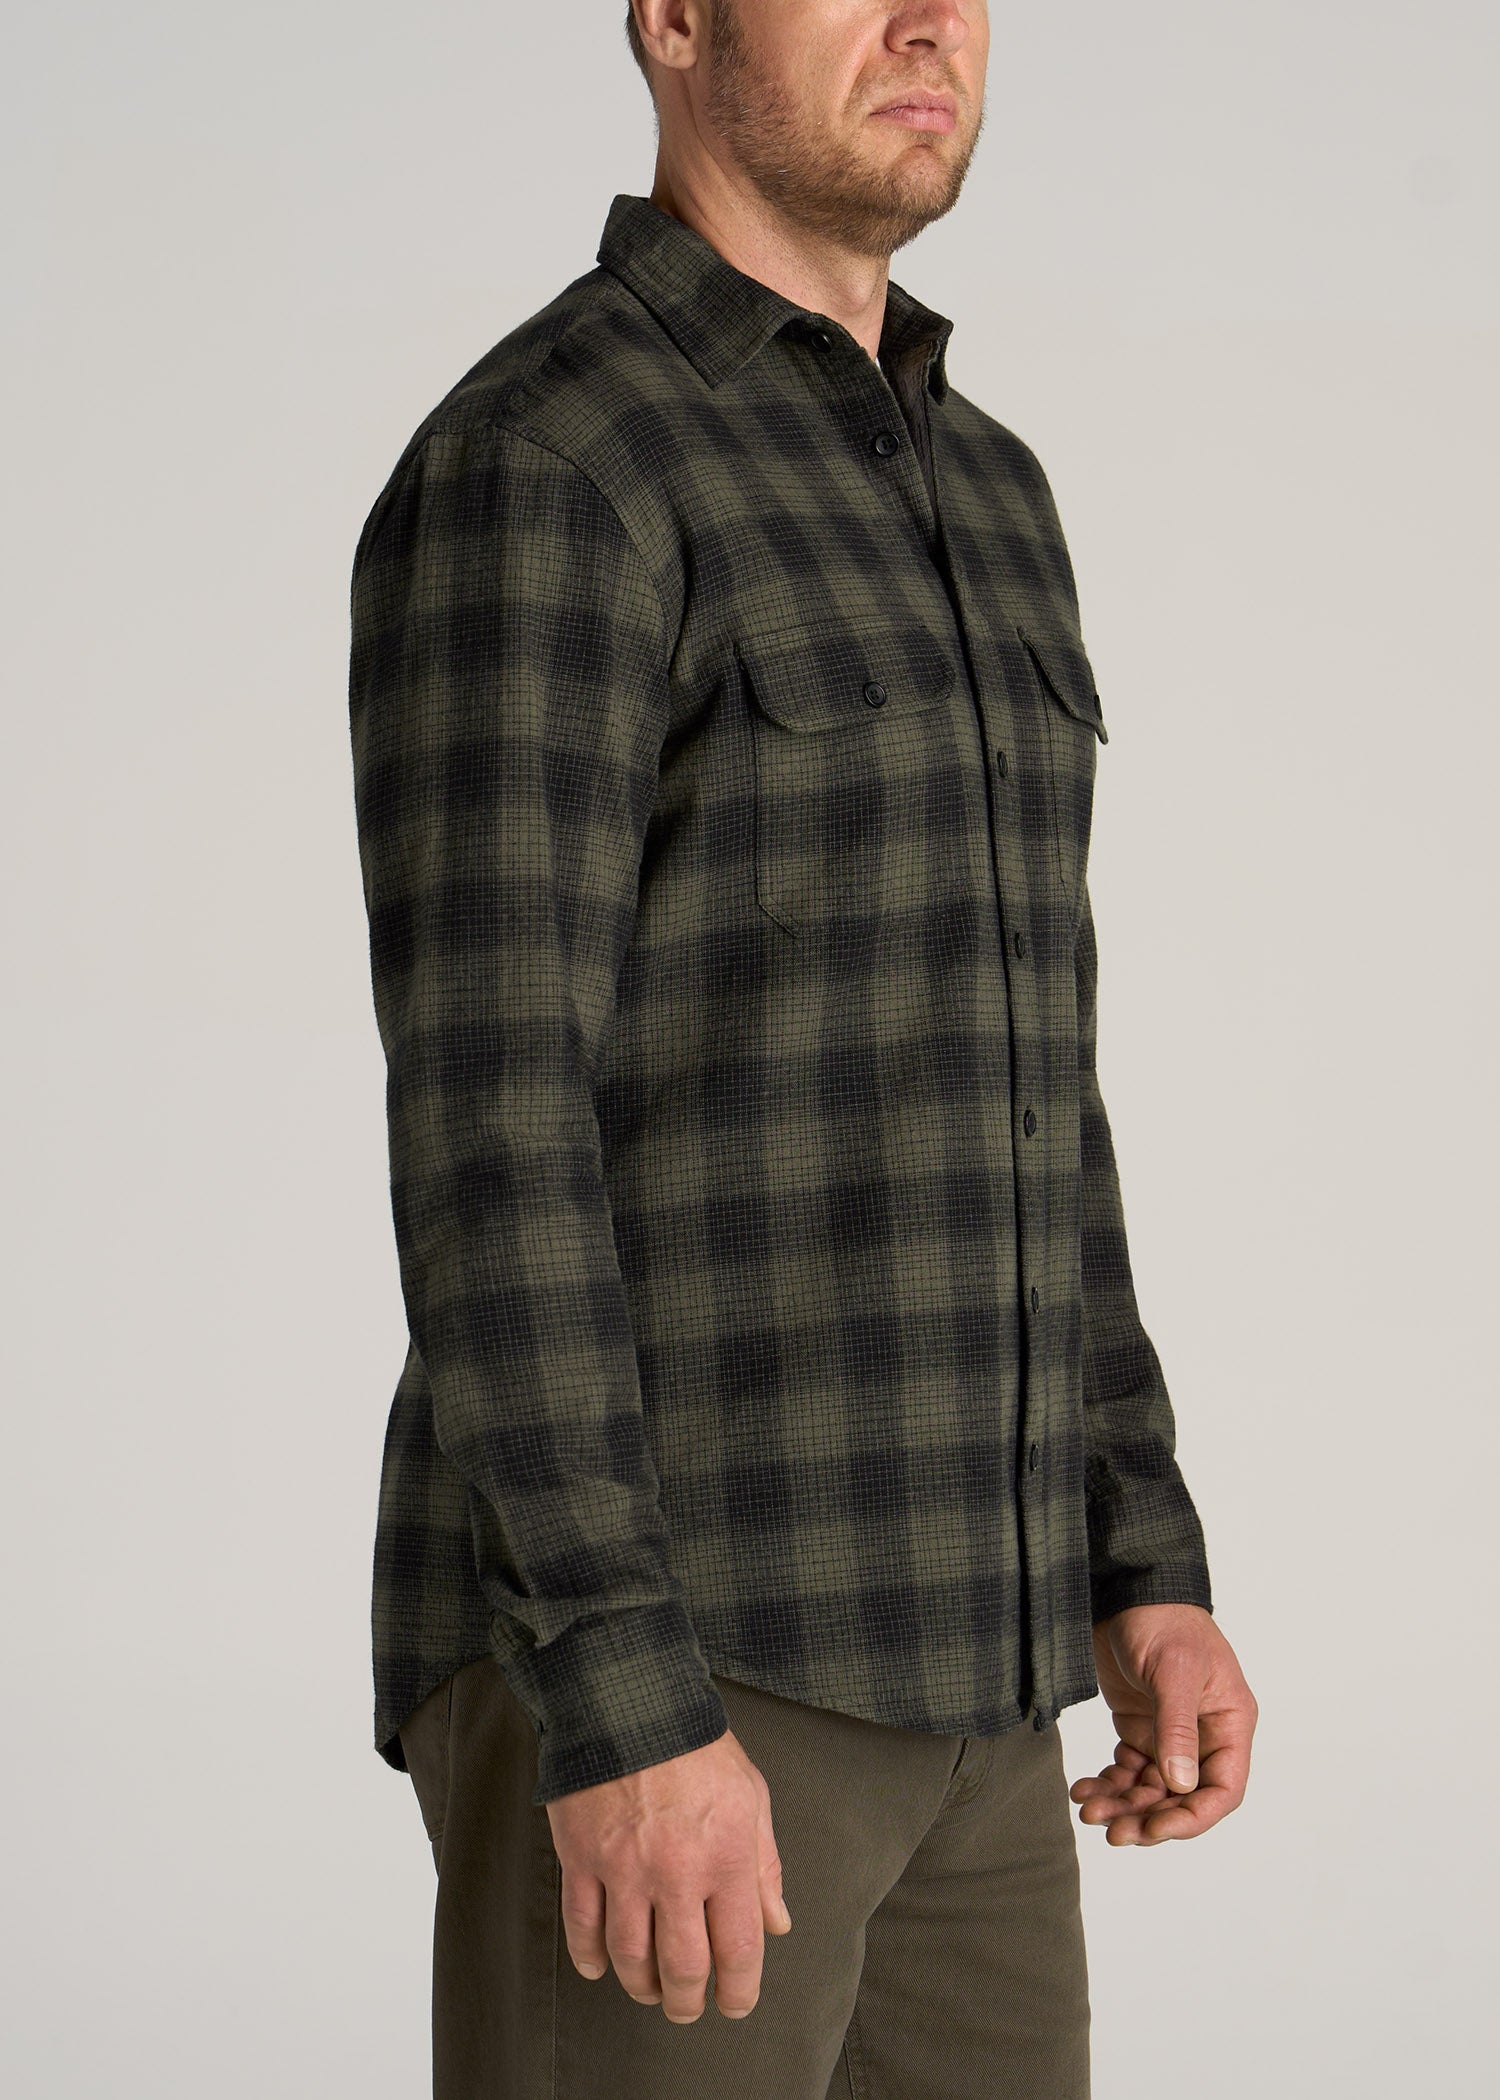 American-Tall-Men-LJ-Heavy-Flannel-Shirt-Army-Plaid-Black-Surplus-Green-side